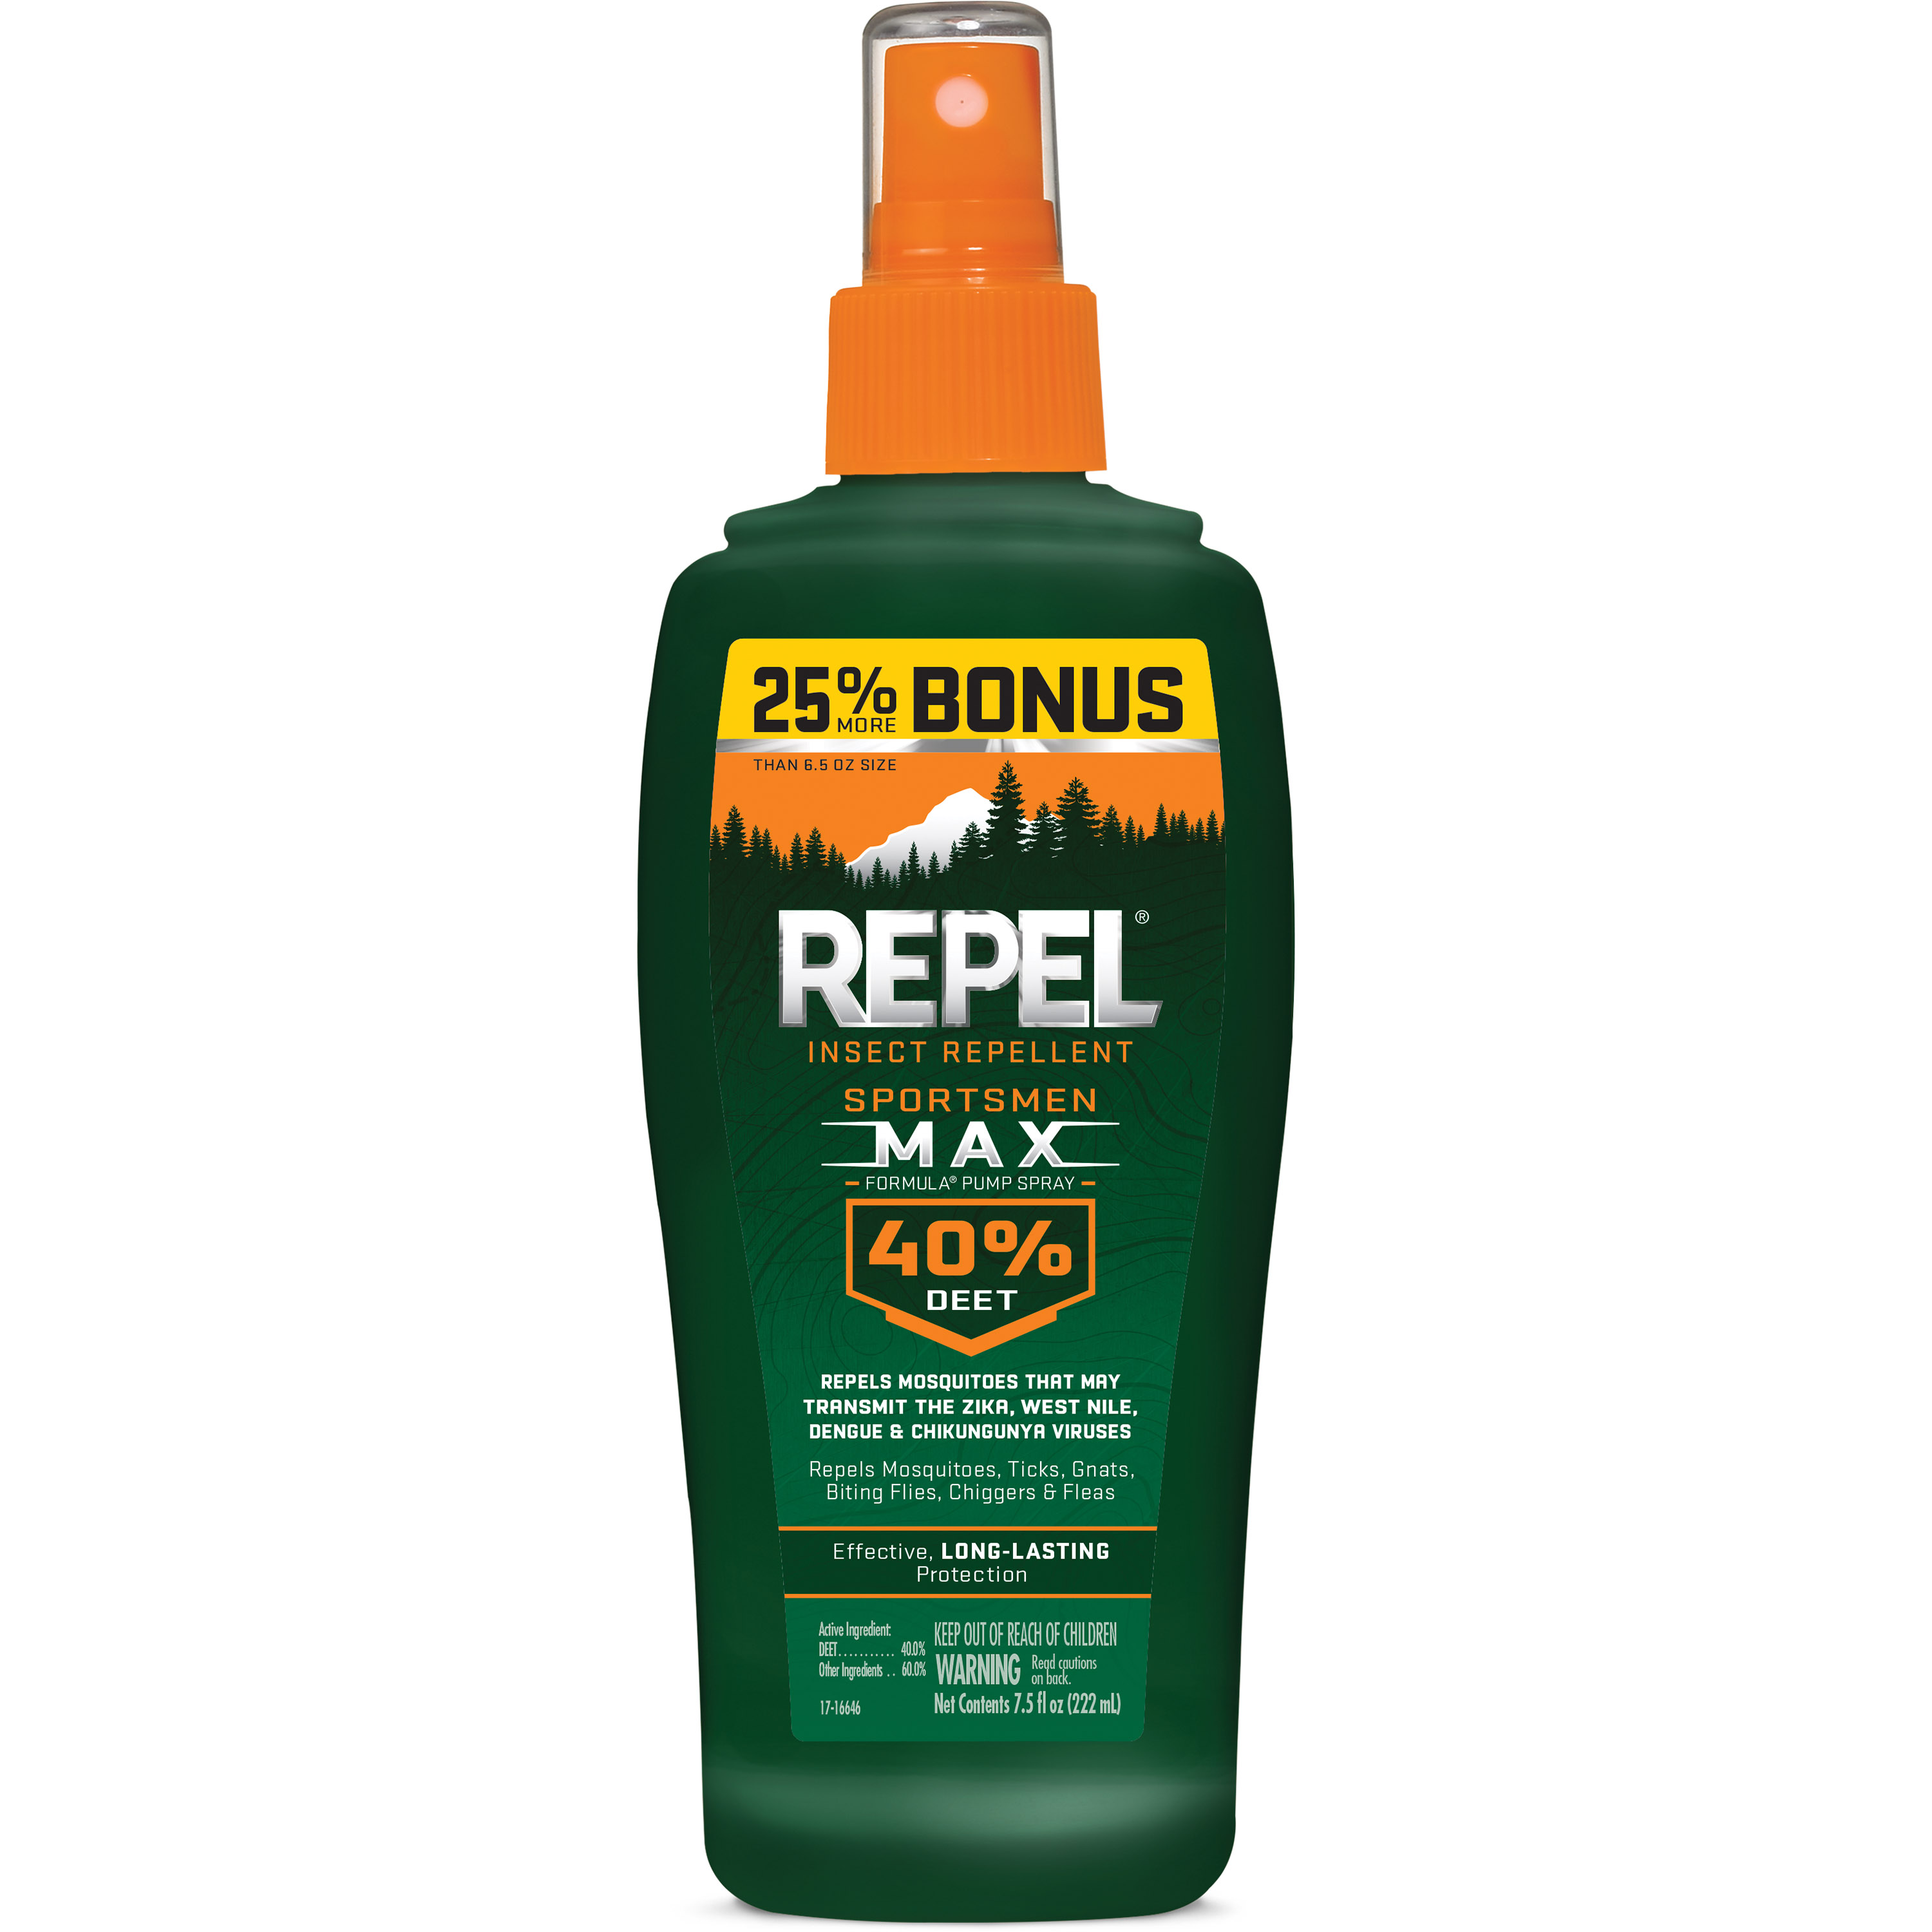 Repel Insect Repellent Sportsmen Max Formula Spray Pump 40% Deet, 7.5-fl oz - image 1 of 10